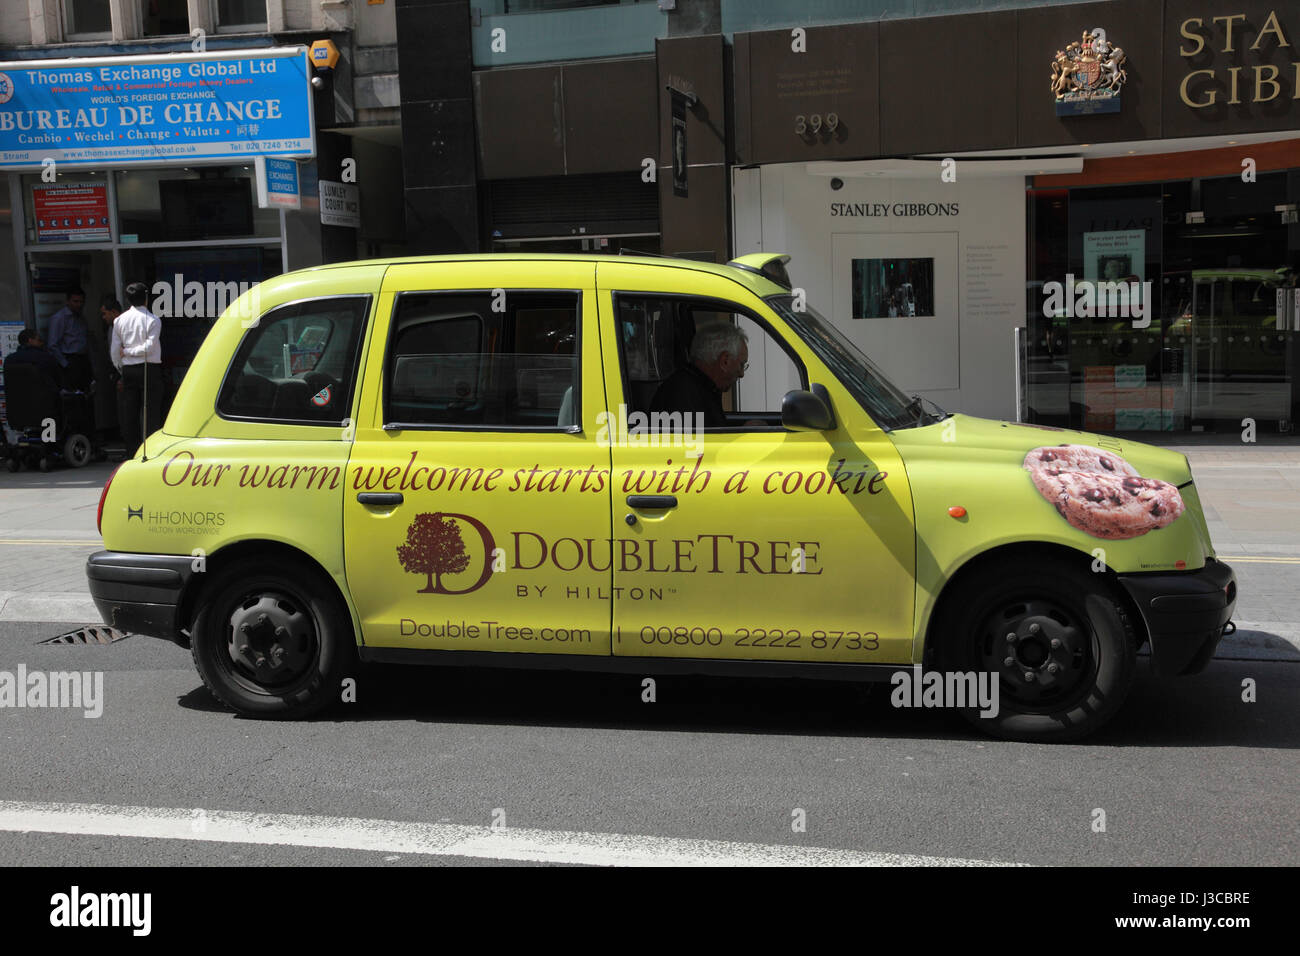 Un taxi hôtels DoubleTree Hilton publicité sur le Strand, London Banque D'Images